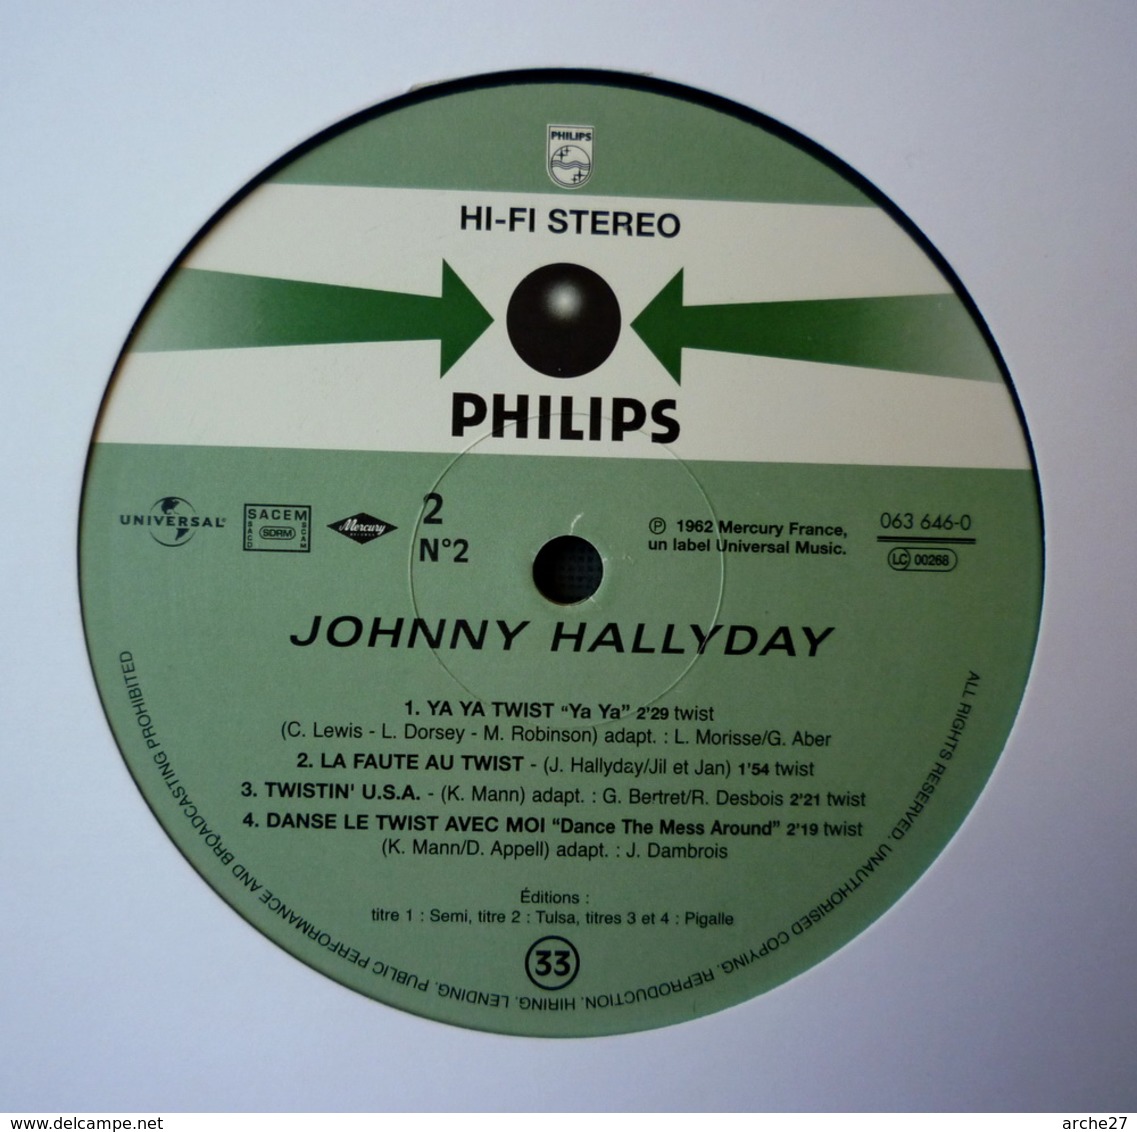 JOHNNY HALLYDAY - 25 Cm - 33T - Disque Vinyle - BOF Les Parisiennes - 63646 - Rock